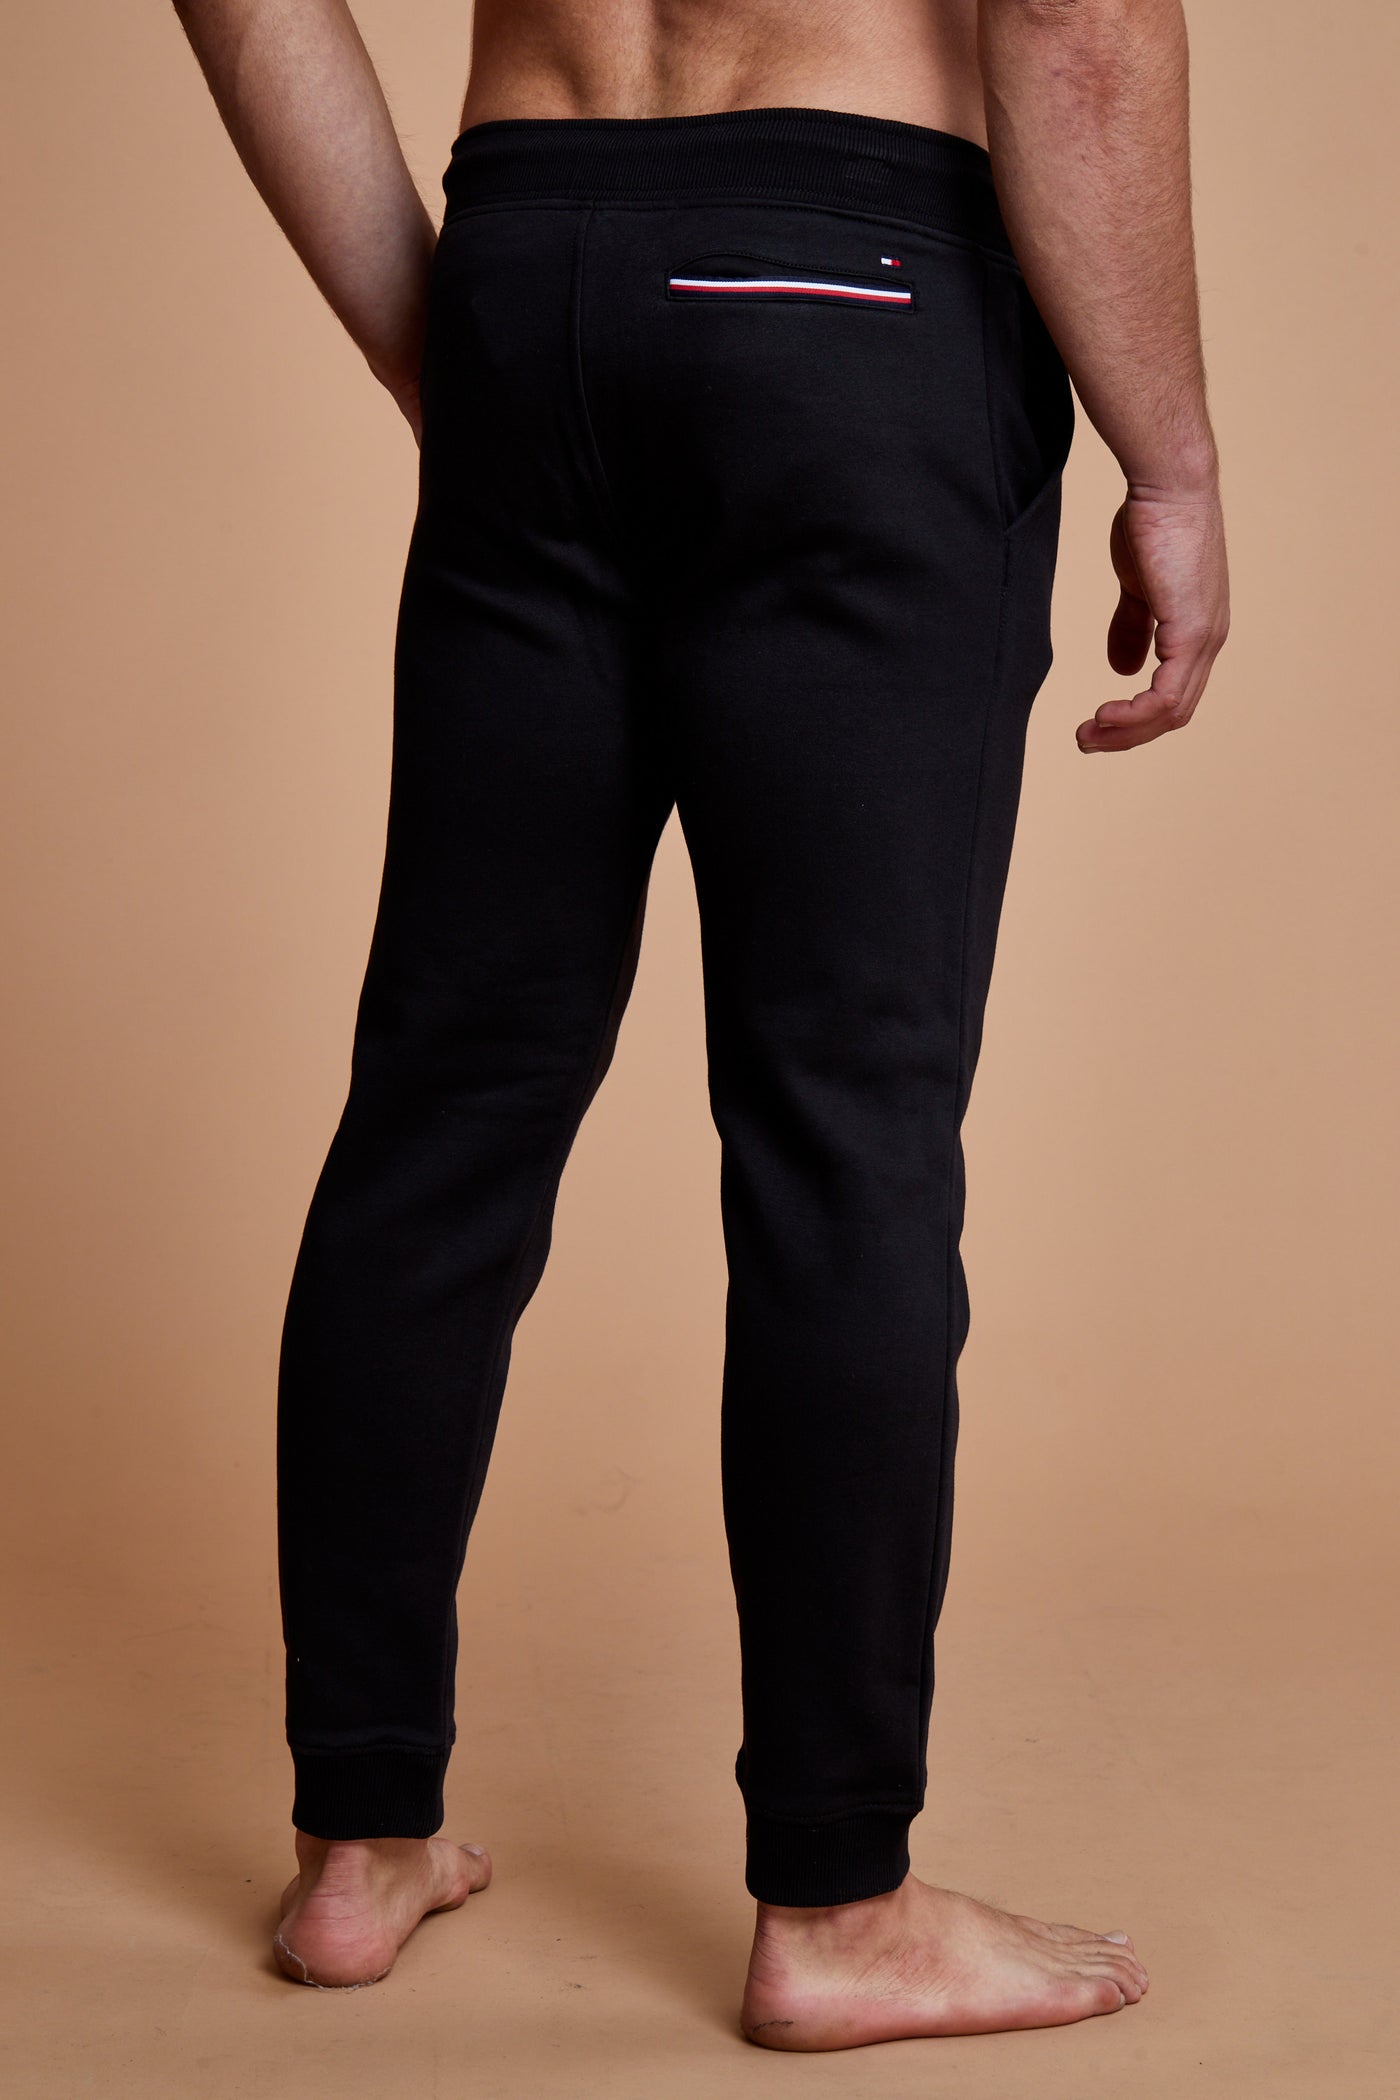 מכנס פוטר בצבע שחור